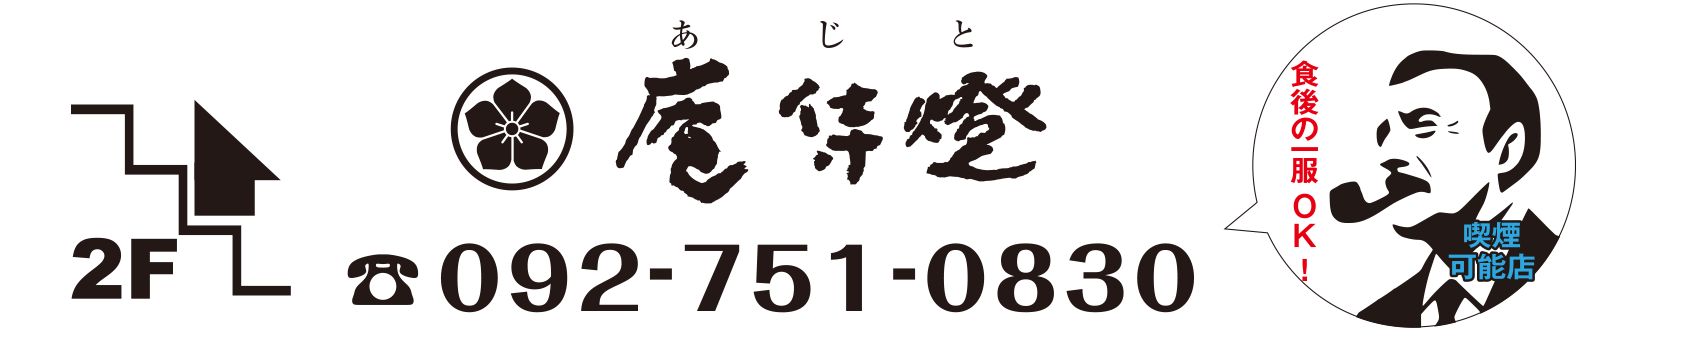 庵侍燈(あじと)092-751-0830